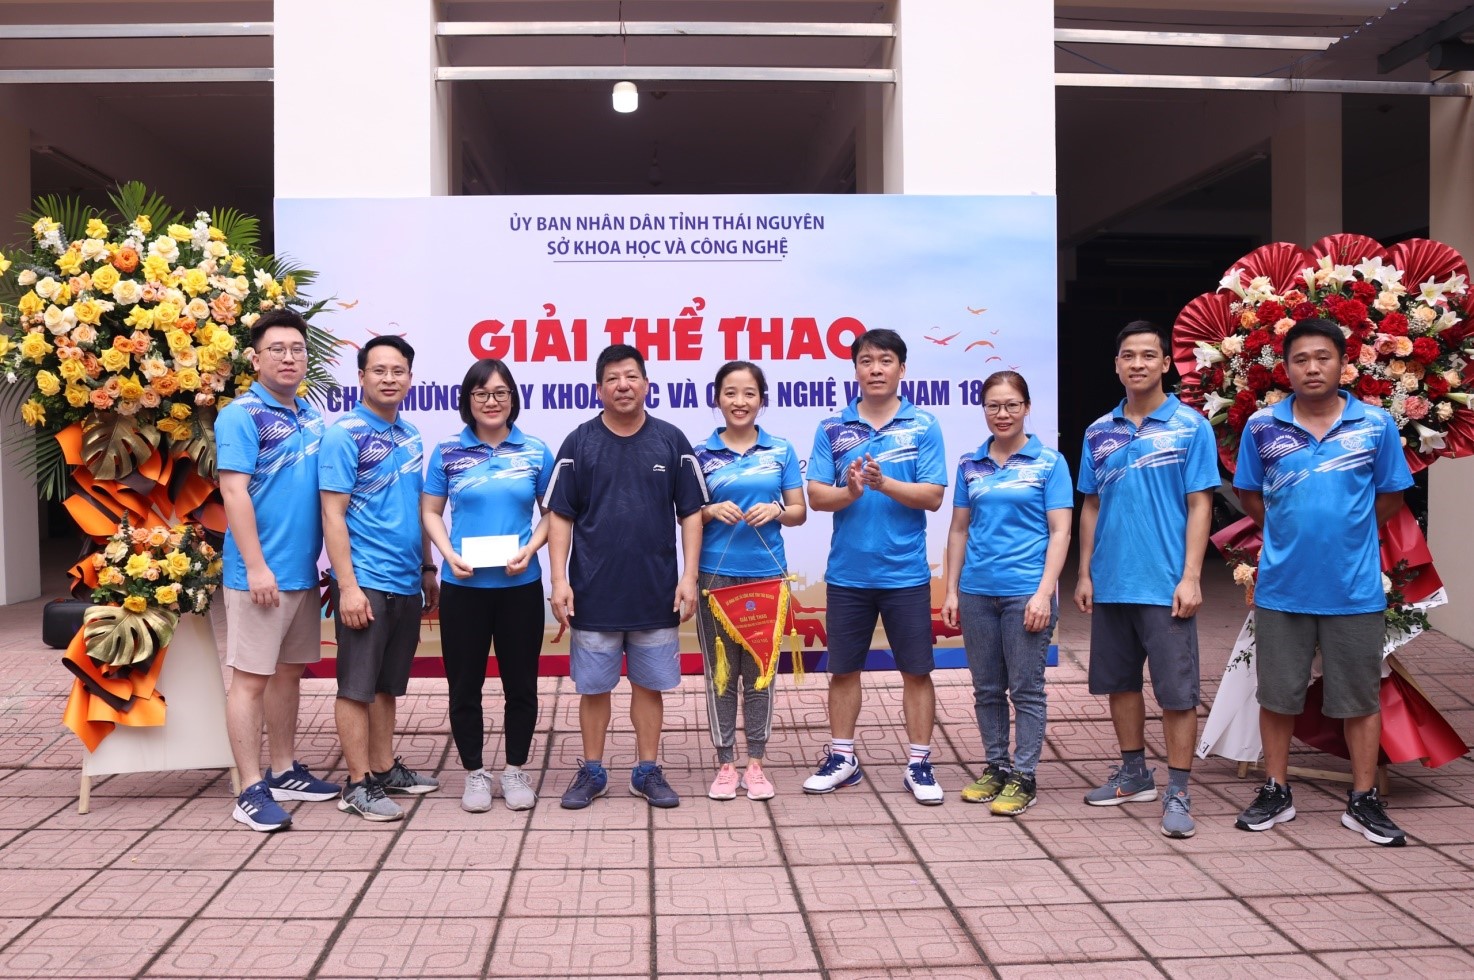 Giải thể thao chào mừng Ngày Khoa học và Công nghệ Việt Nam 18-5 -6